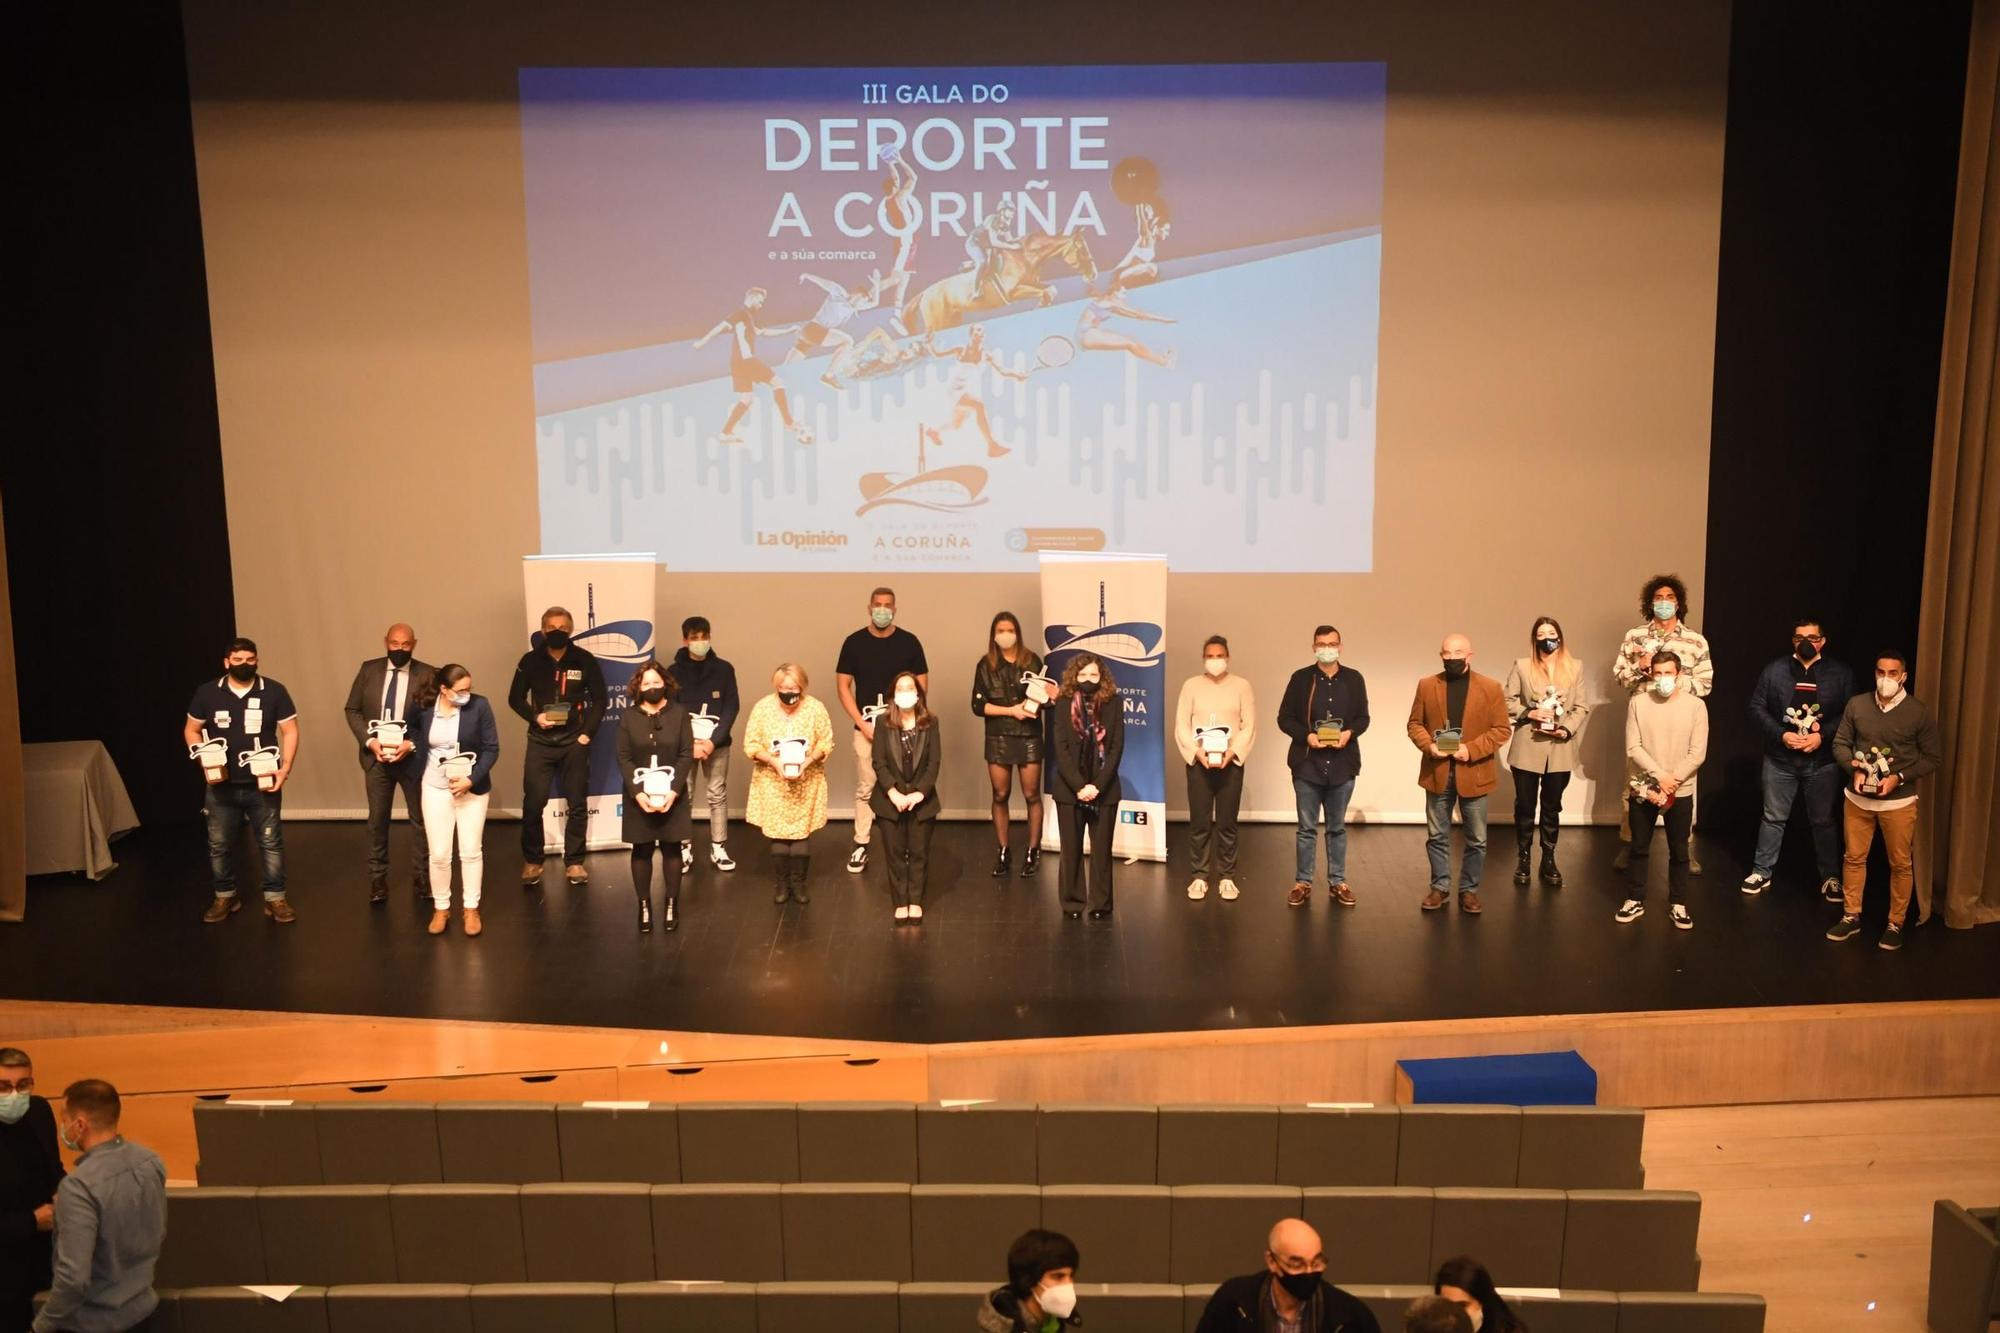 Gala do Deporte da Coruña e a súa comarca